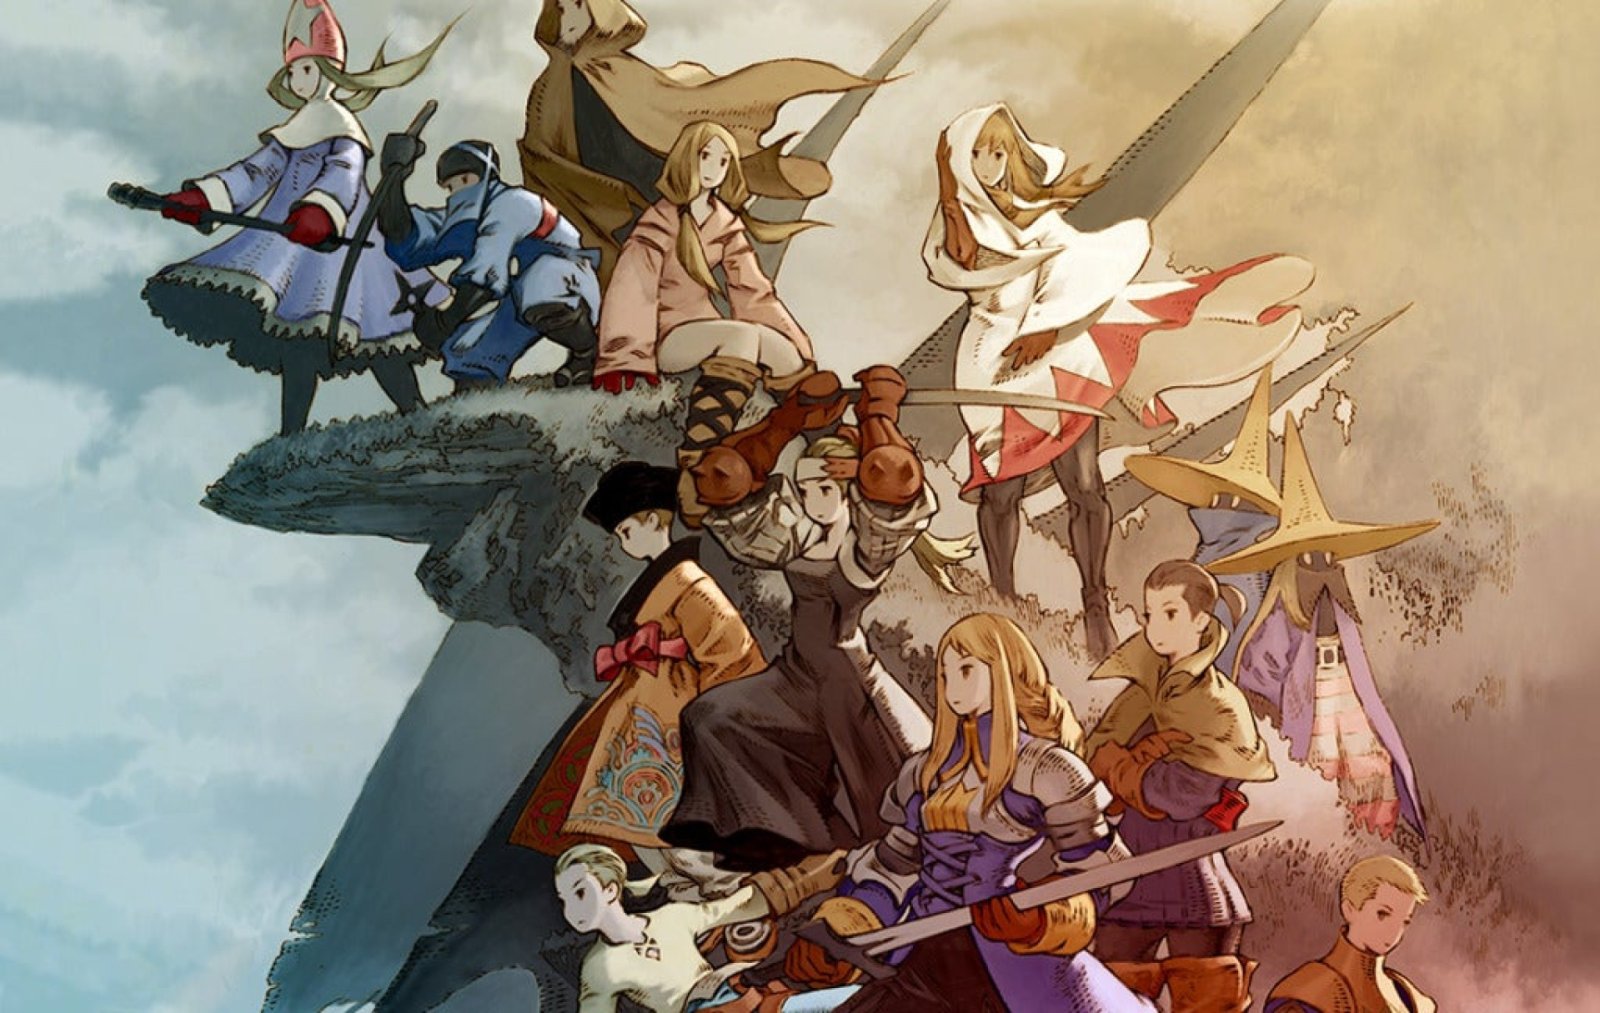 ฝันสลาย! ผู้สร้างออกมาปฏิเสธการนำ ‘Final Fantasy Tactics’ มารีมาสเตอร์ใหม่